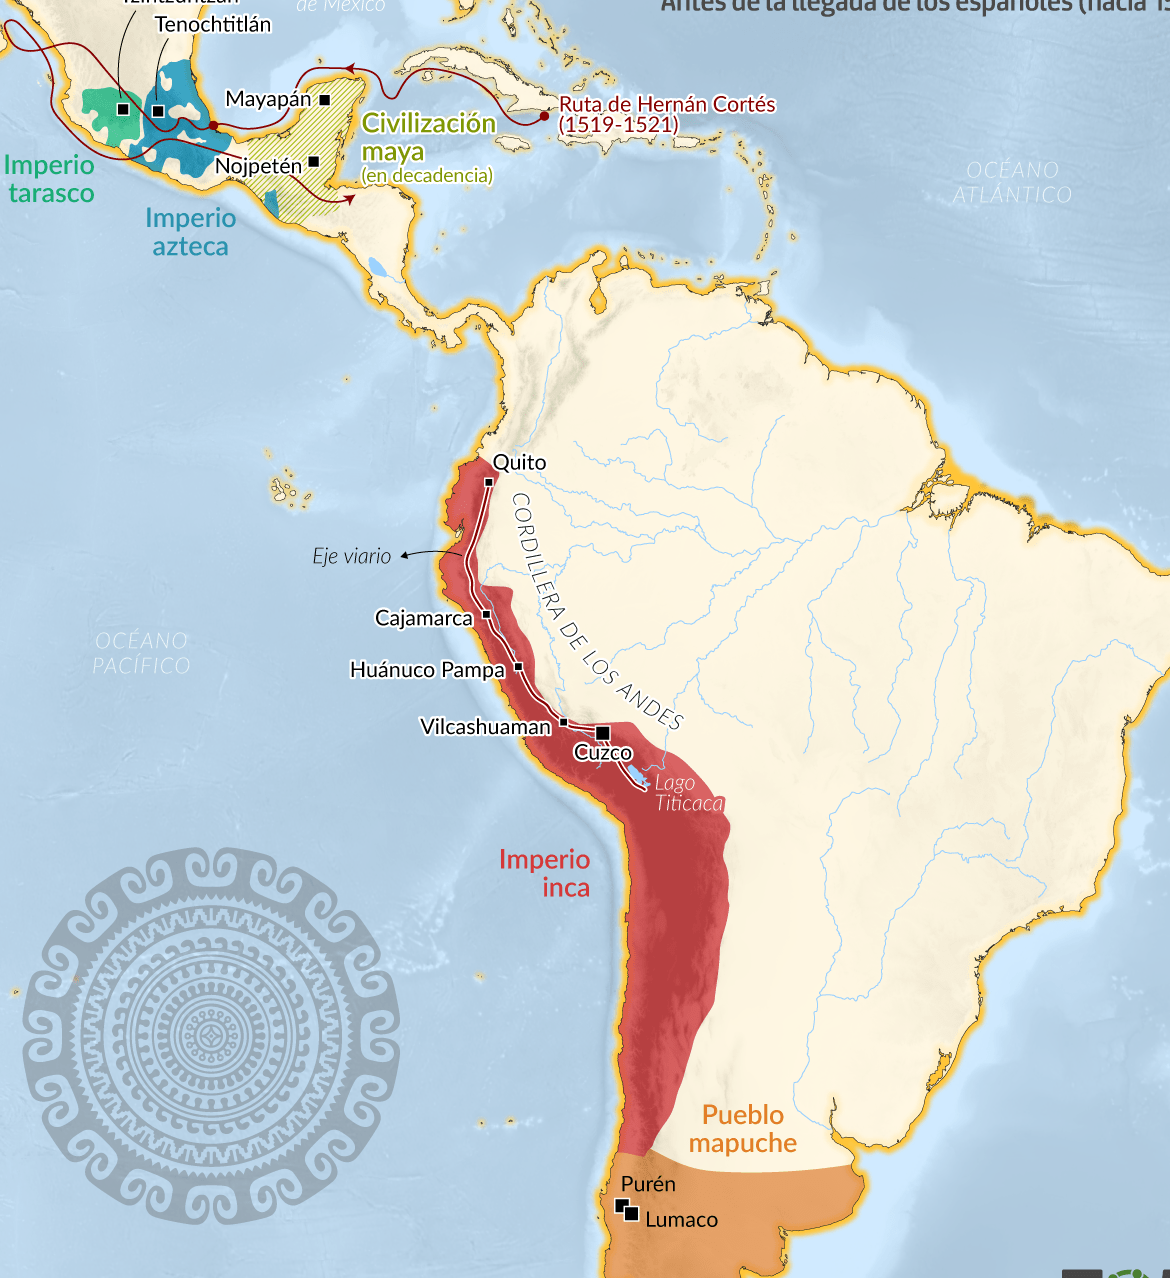 Mapa de las civilizaciones inca, azteca y maya: un recorrido por la historia precolombina